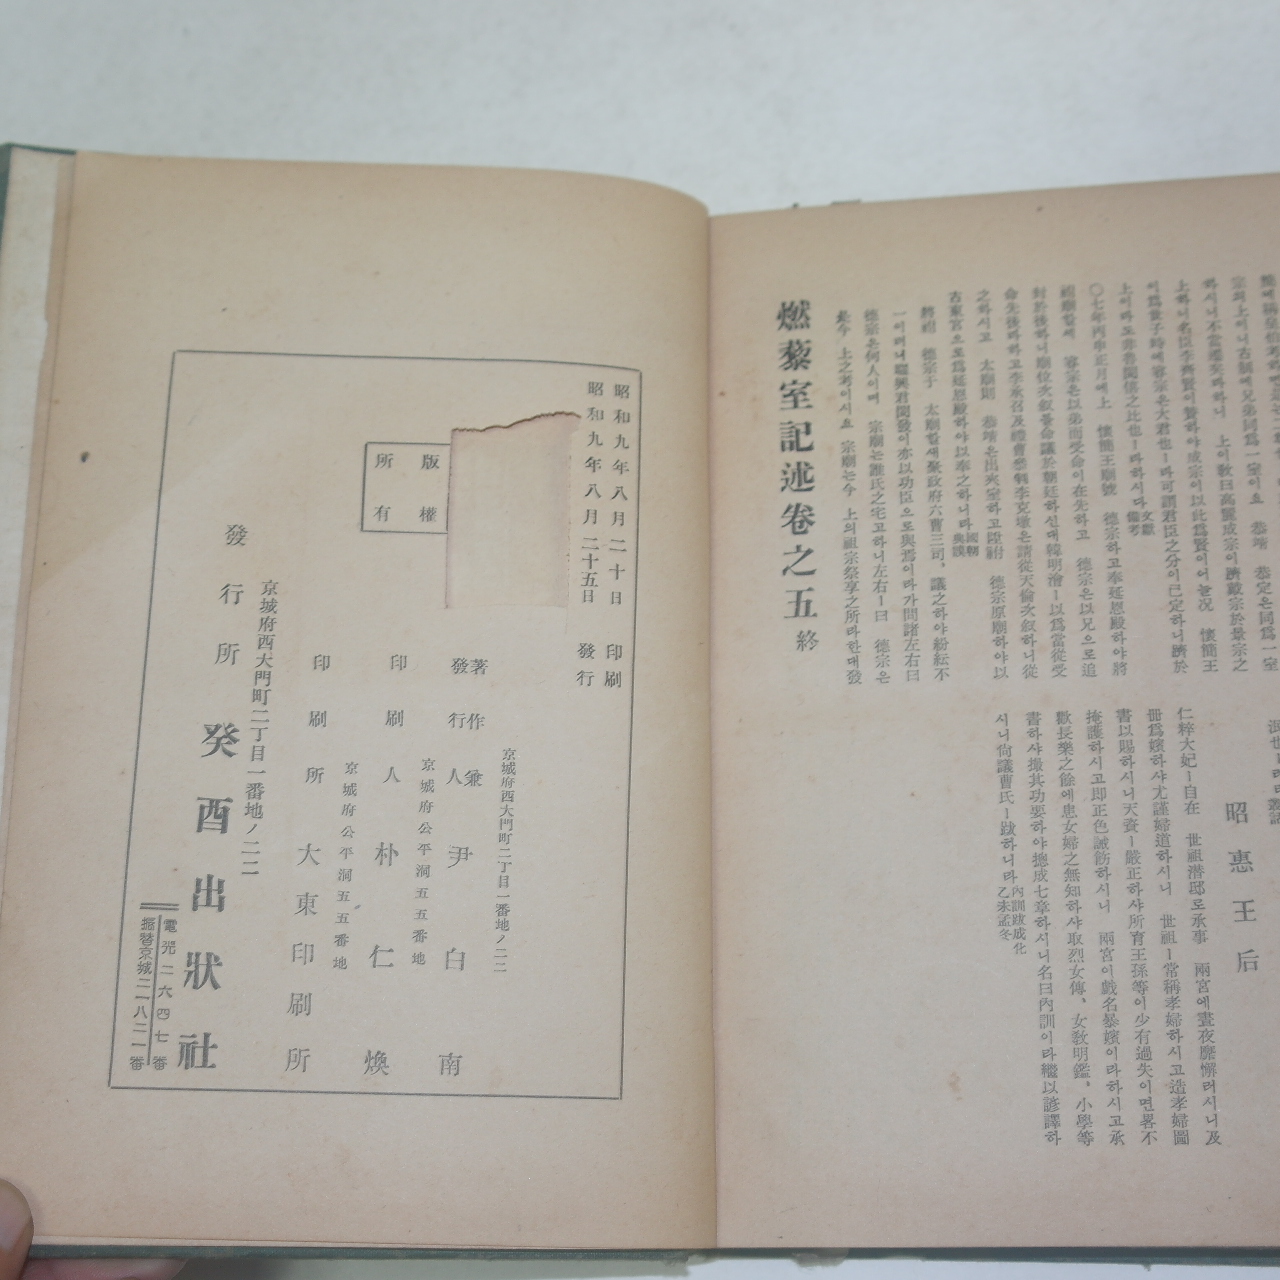 1934년 조선야사전집(朝鮮野史全集)권3